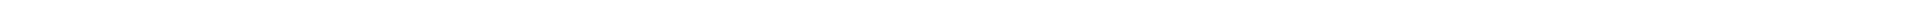 Элайнеры - цены на капы для выравнивания (исправления) прикуса, цены в Астане, Алматы, Атырау, Усть-Каменогорск, Уральск, Кокшетау в Казахстане, фото 7